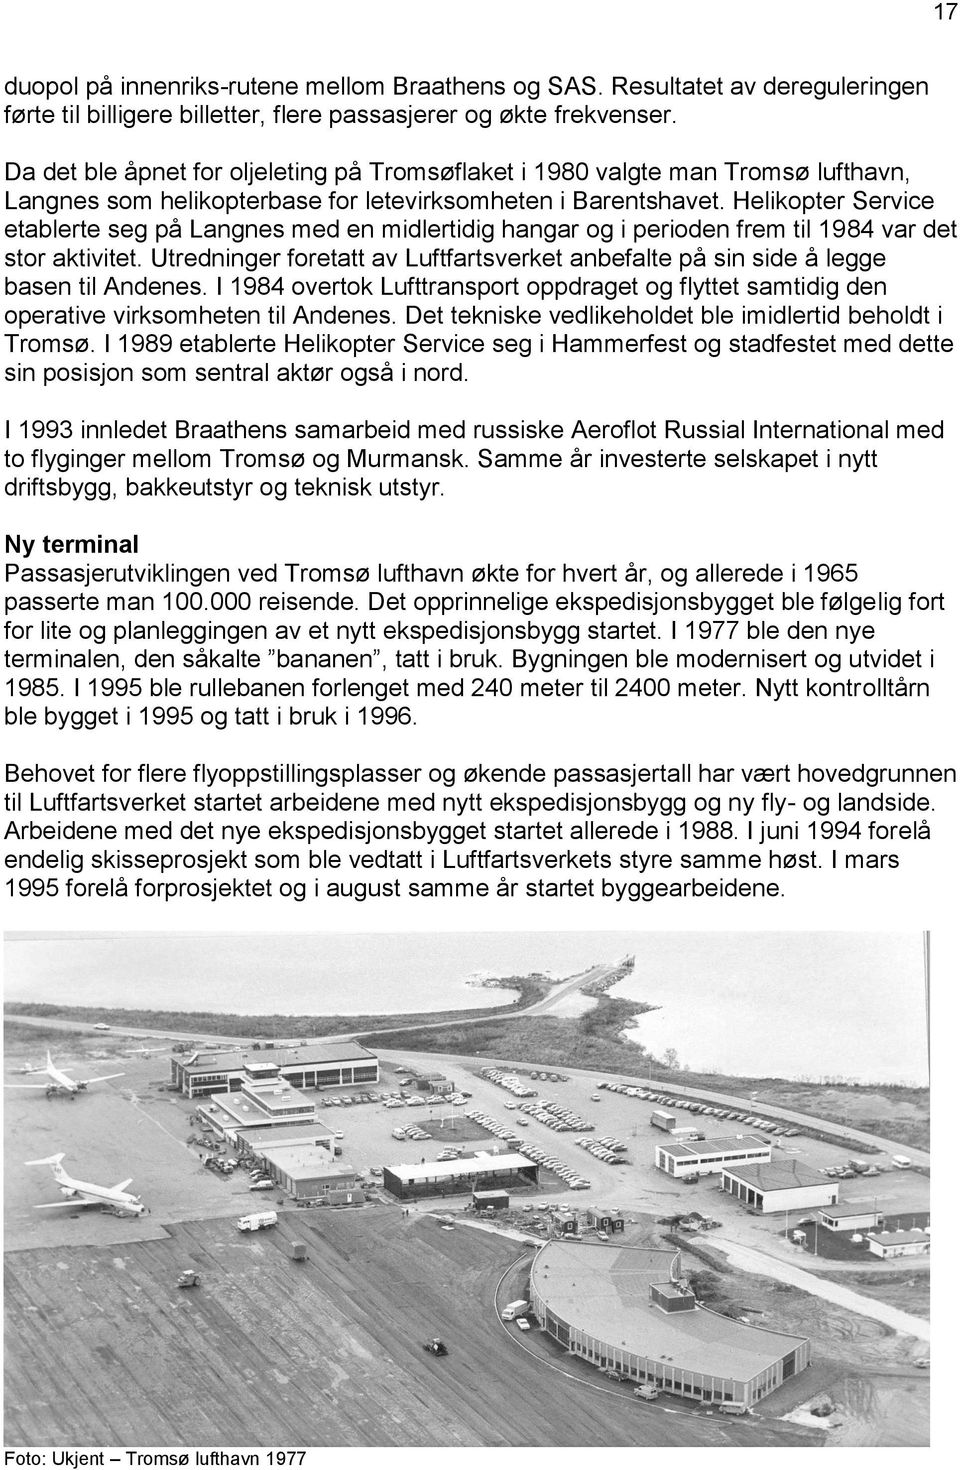 Helikopter Service etablerte seg på Langnes med en midlertidig hangar og i perioden frem til 1984 var det stor aktivitet.